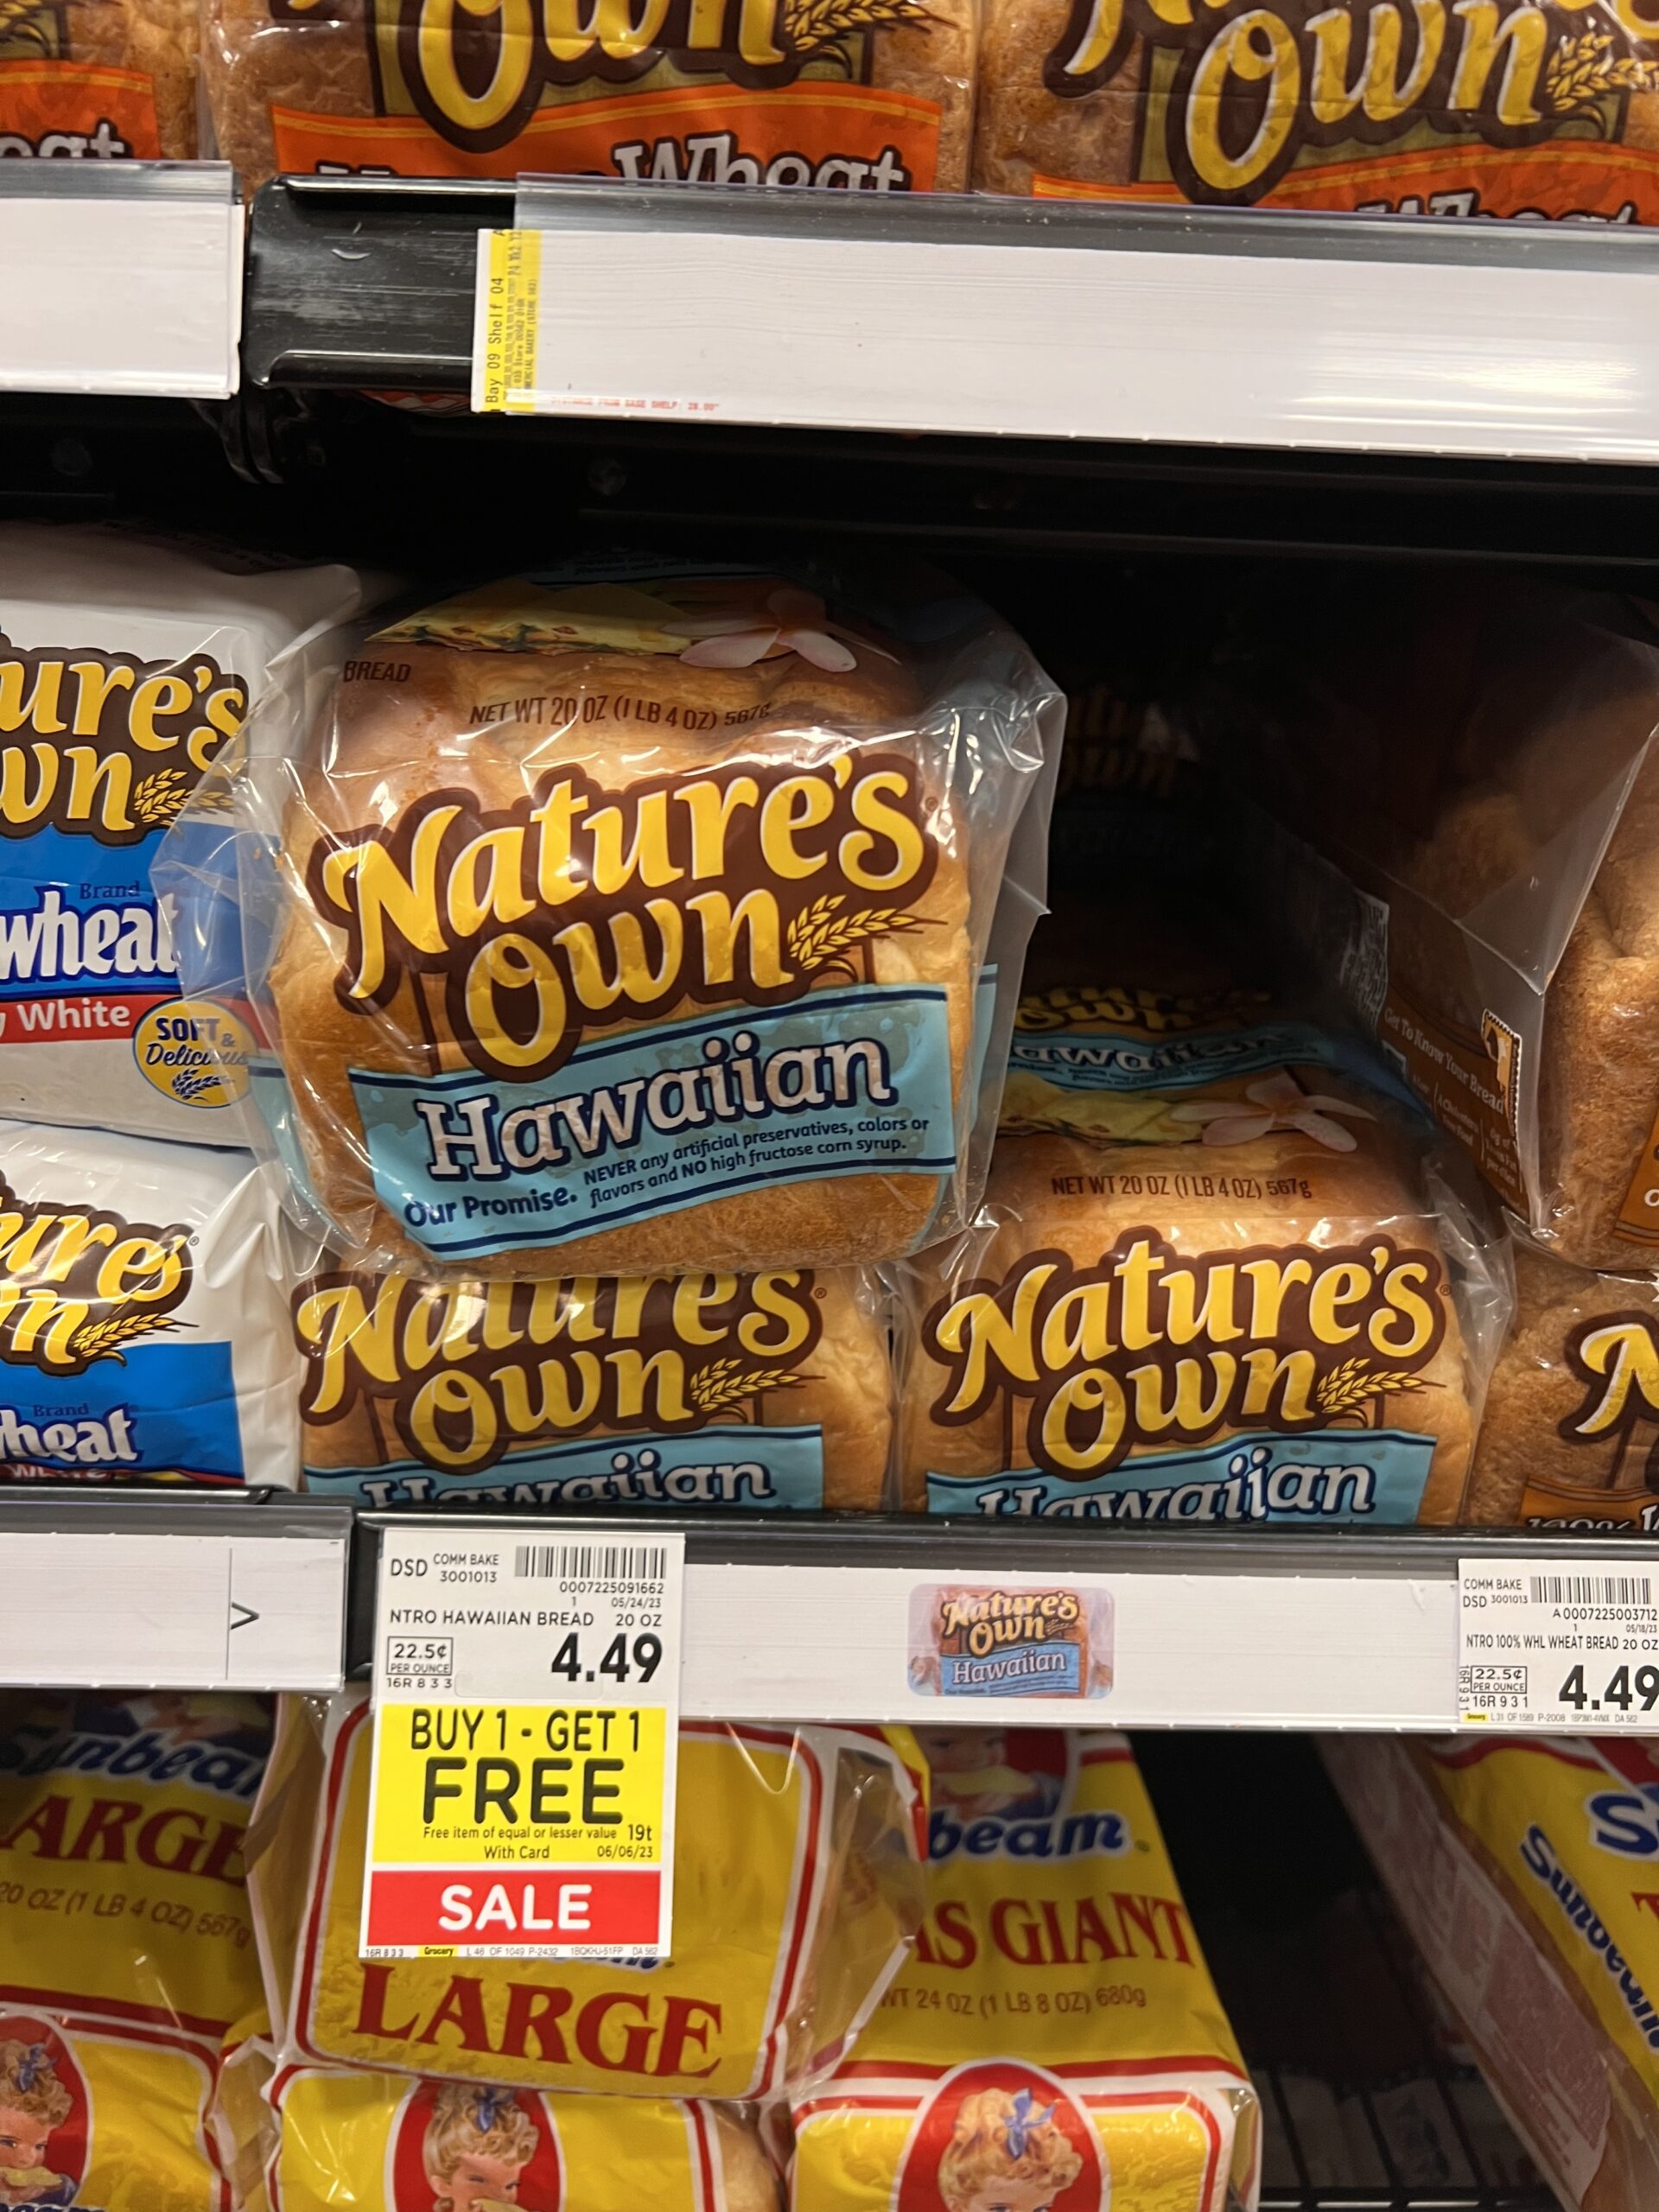 natures own bread kroger shelf image 2